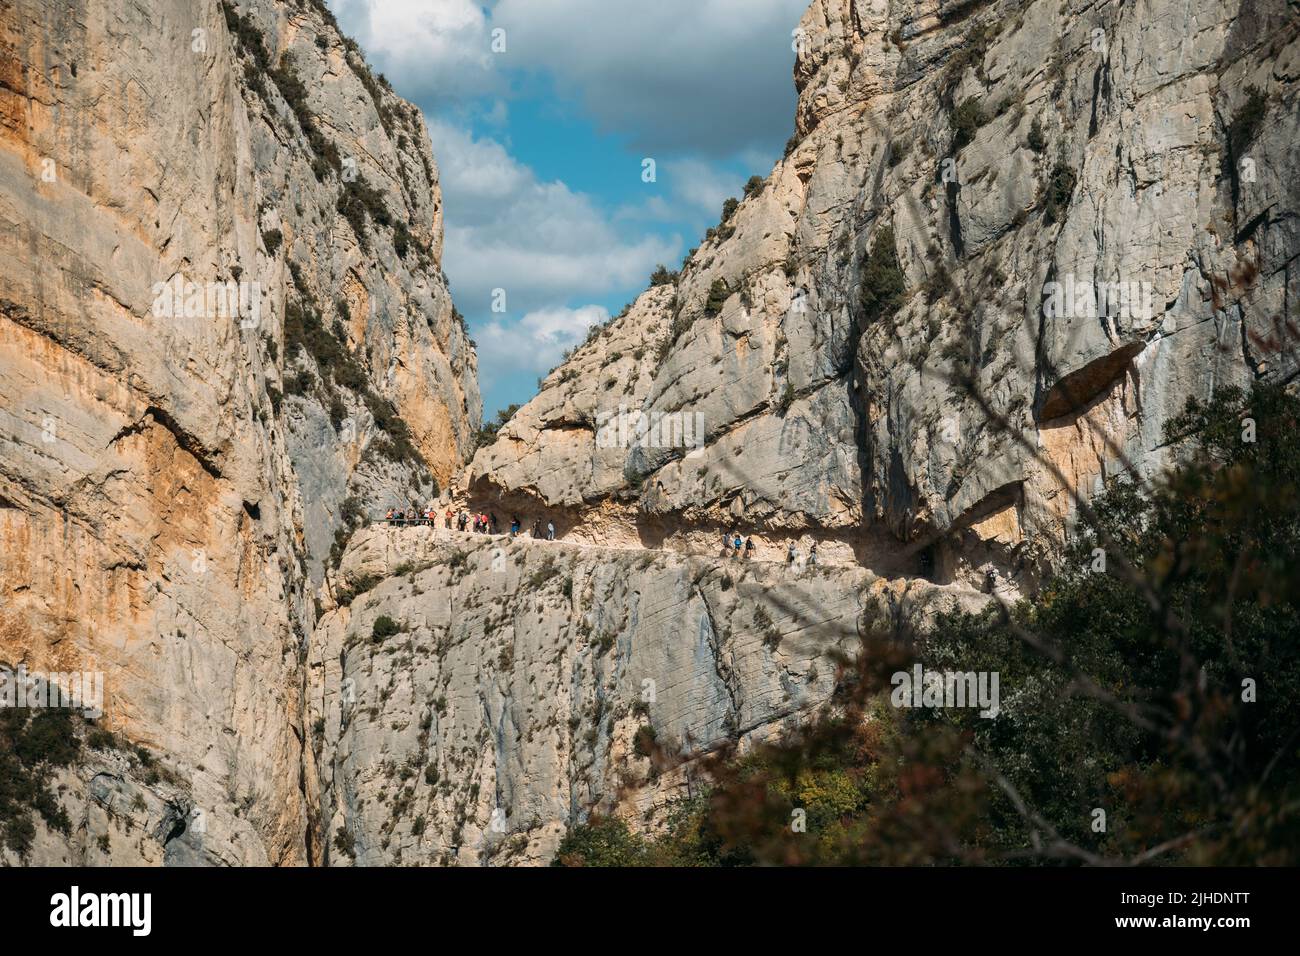 Spettacolare scogliera con una passerella all'interno della roccia con persone che fanno escursioni. Congost de Mont Rebei, Catalogna, Spagna. Foto Stock